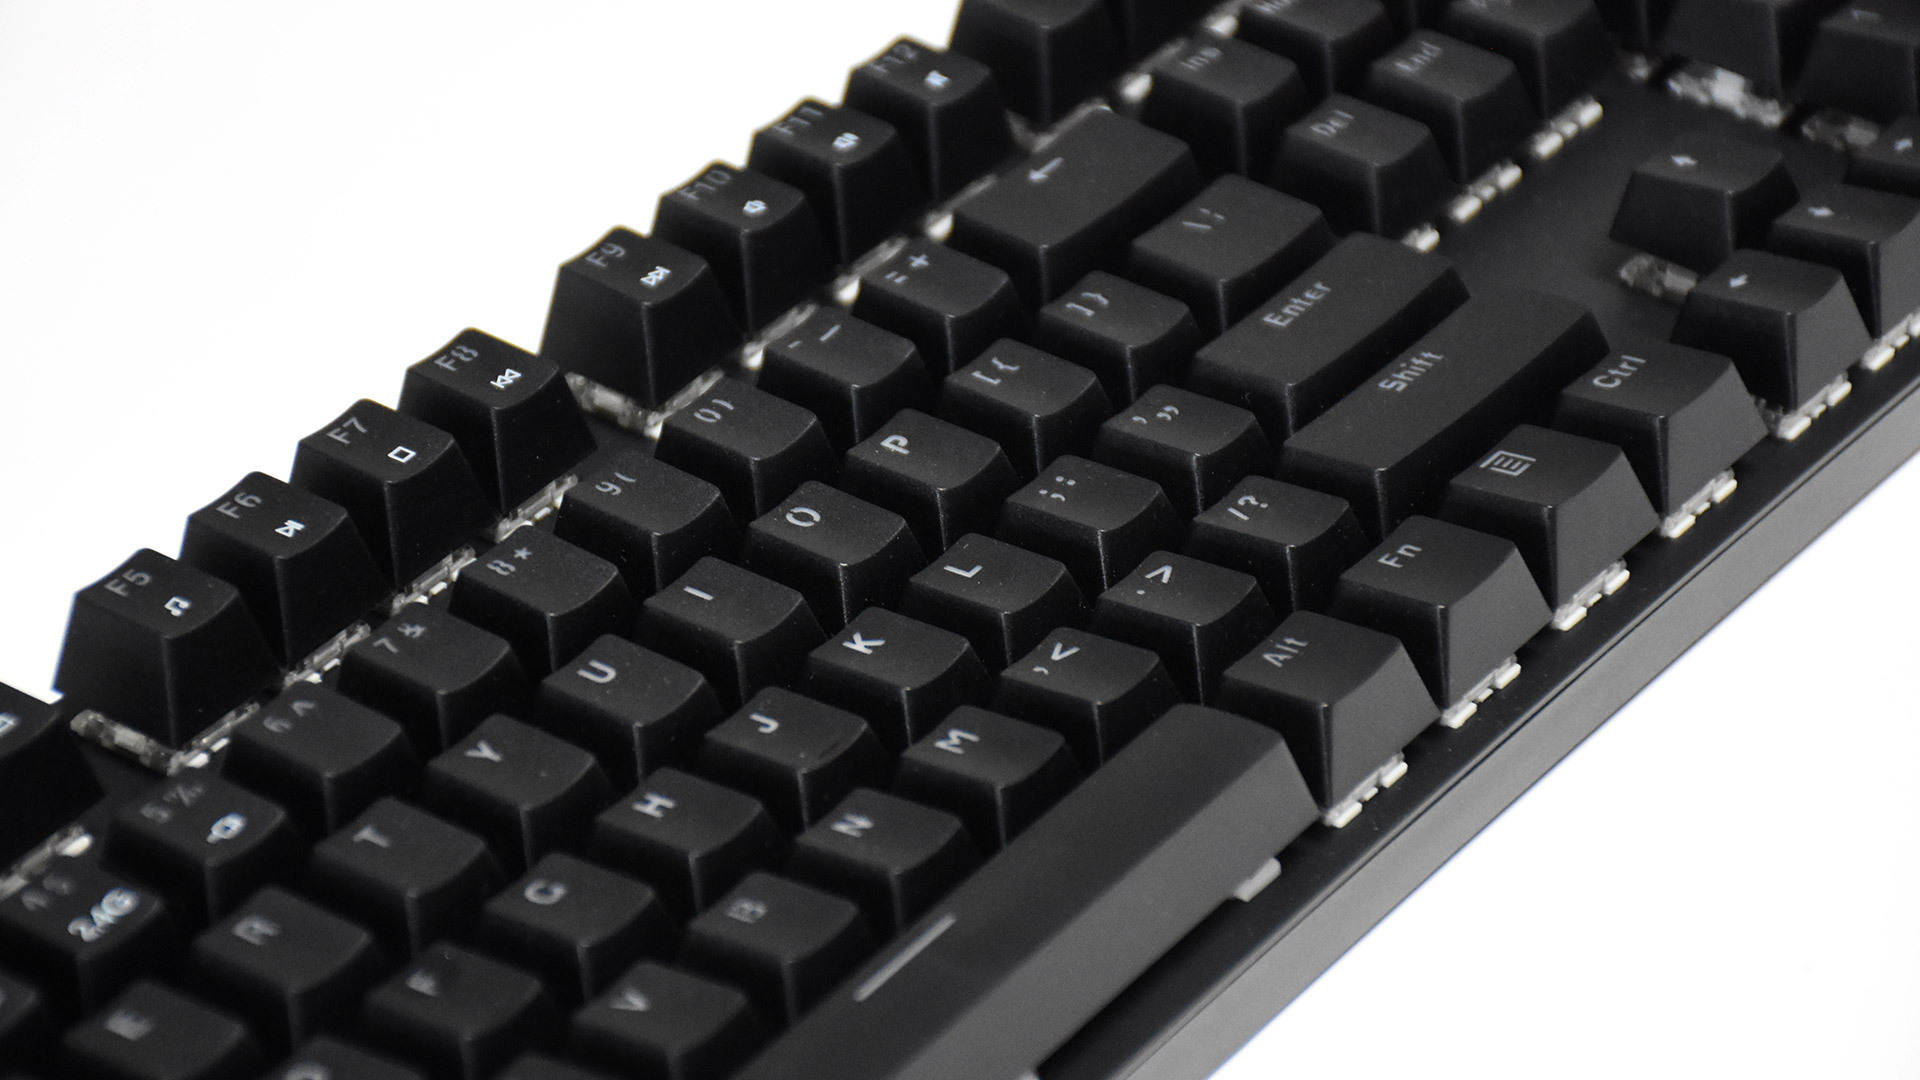 雷柏v500 pro机械键盘:多模连接 扎实体验